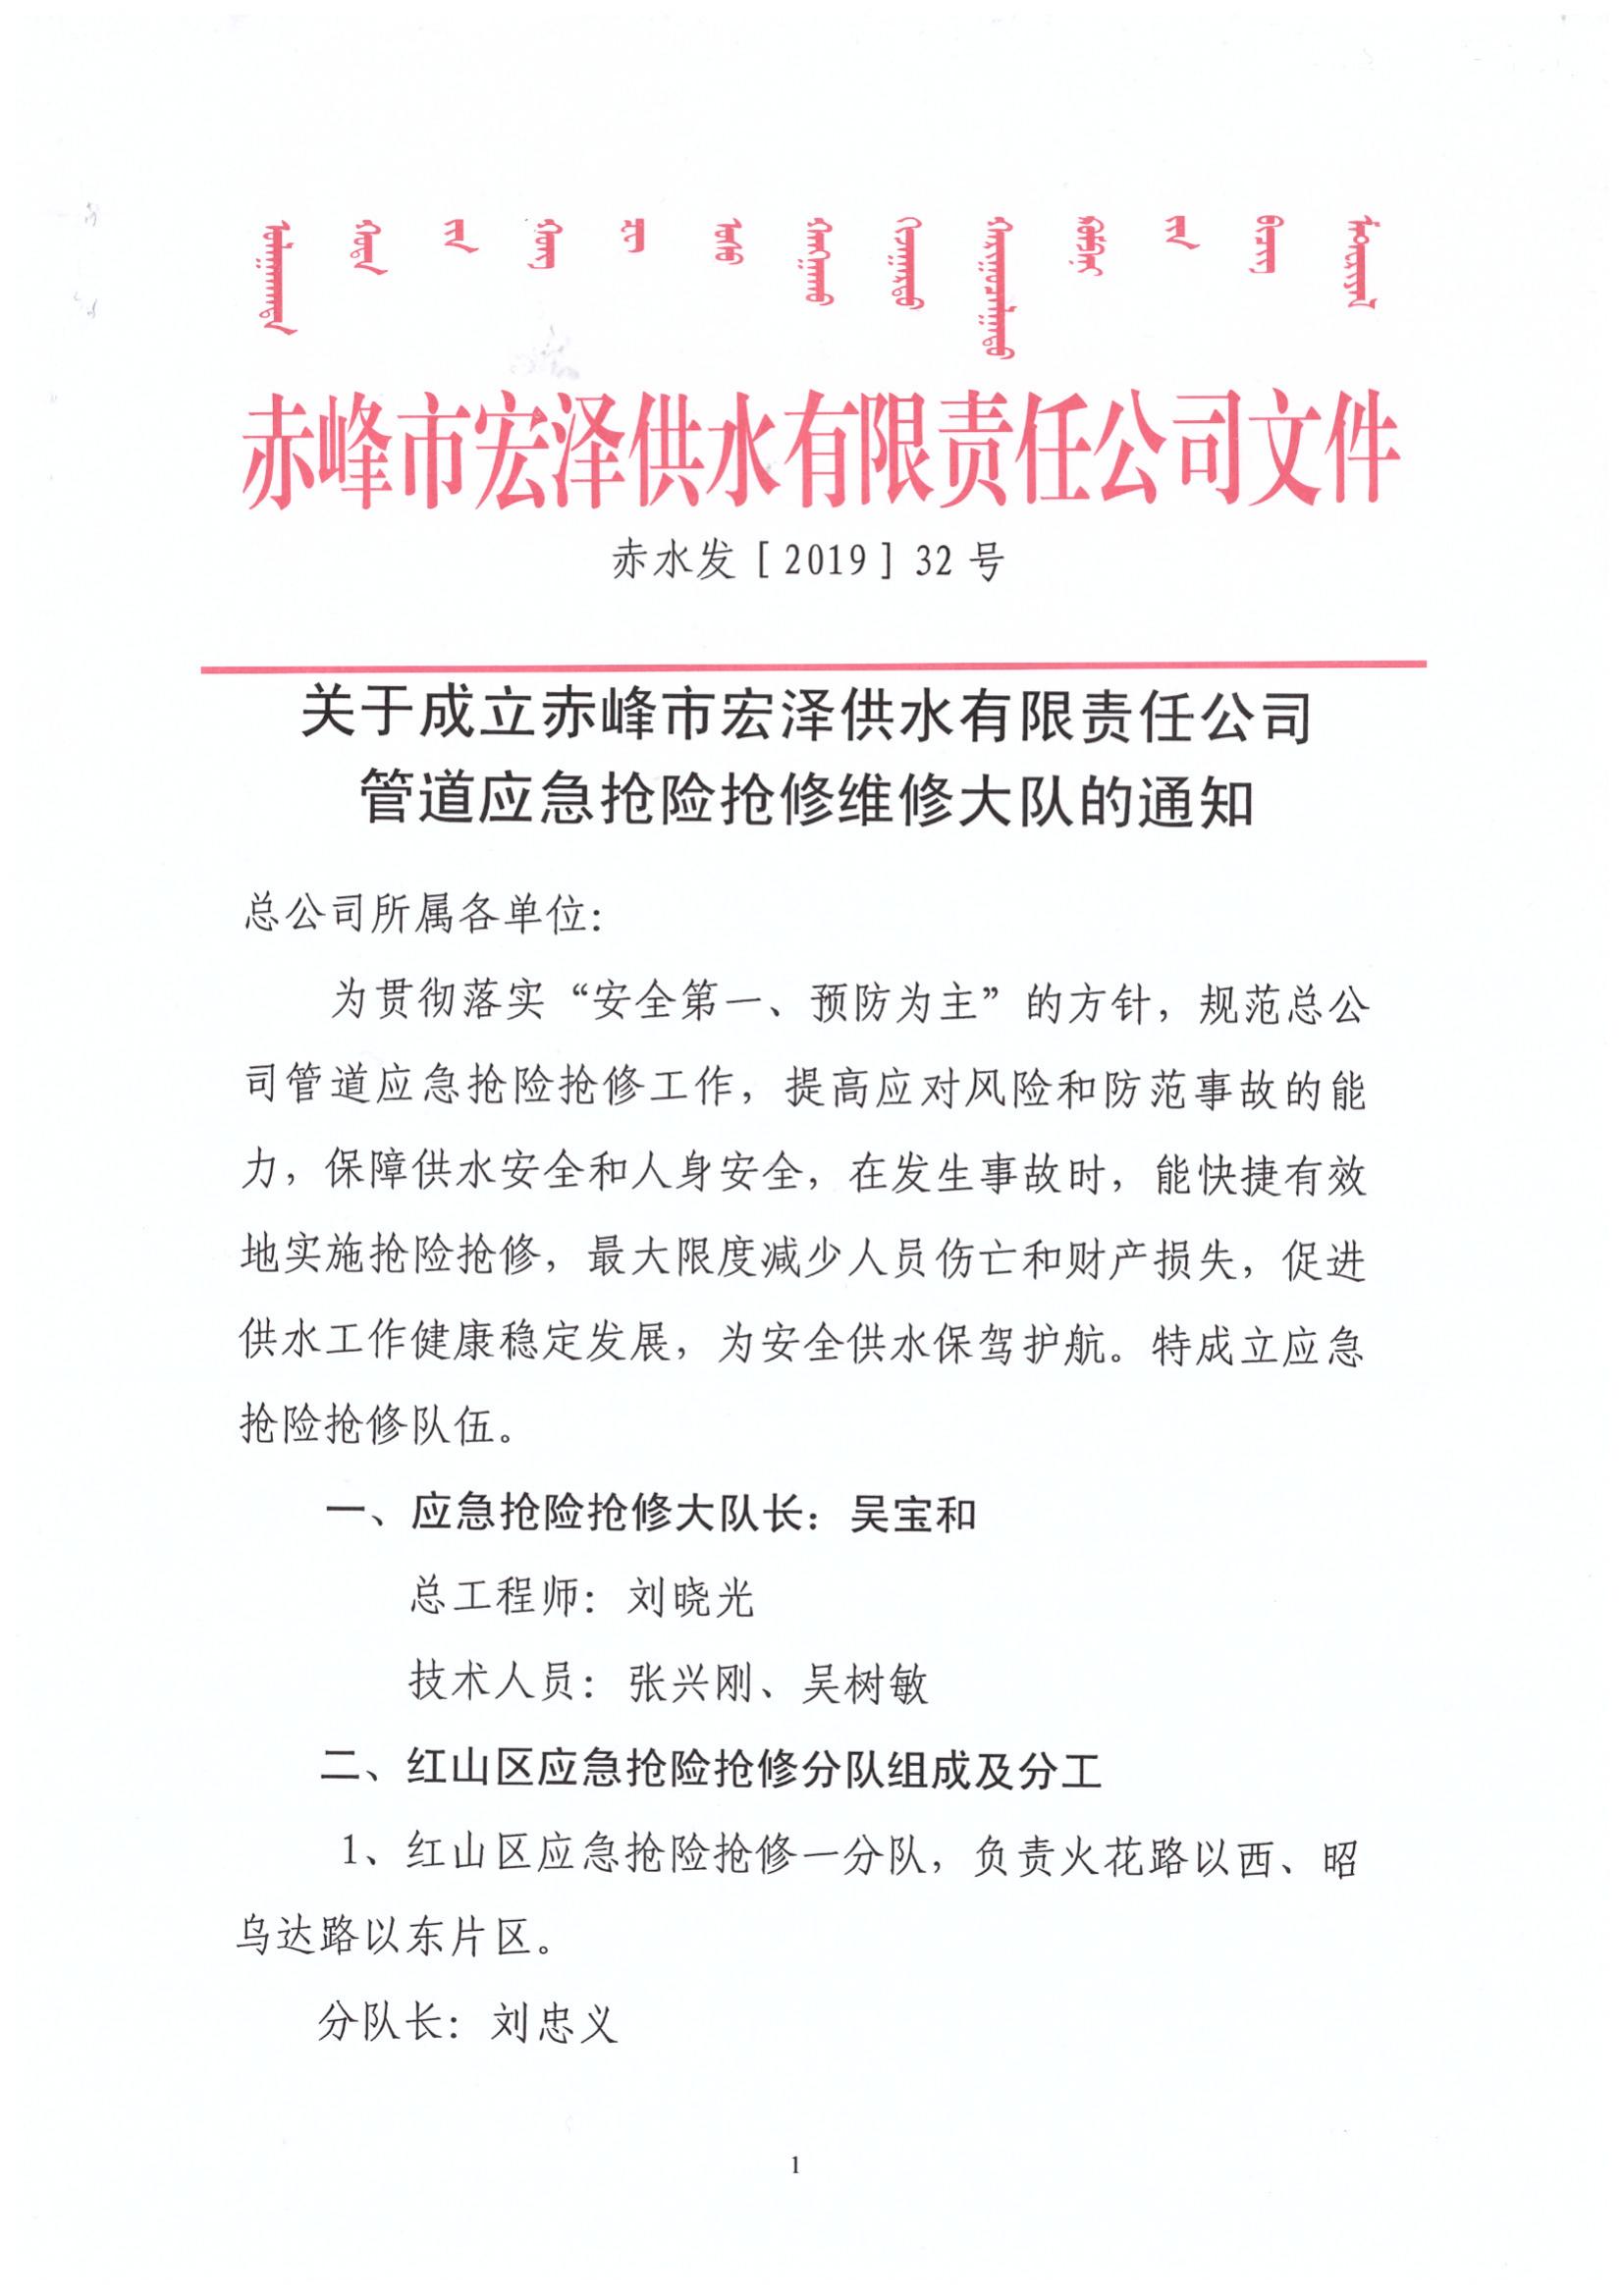 关于成立赤峰市宏泽供水有限责任公司管道应急抢险抢修维修大队的通知_00.jpg